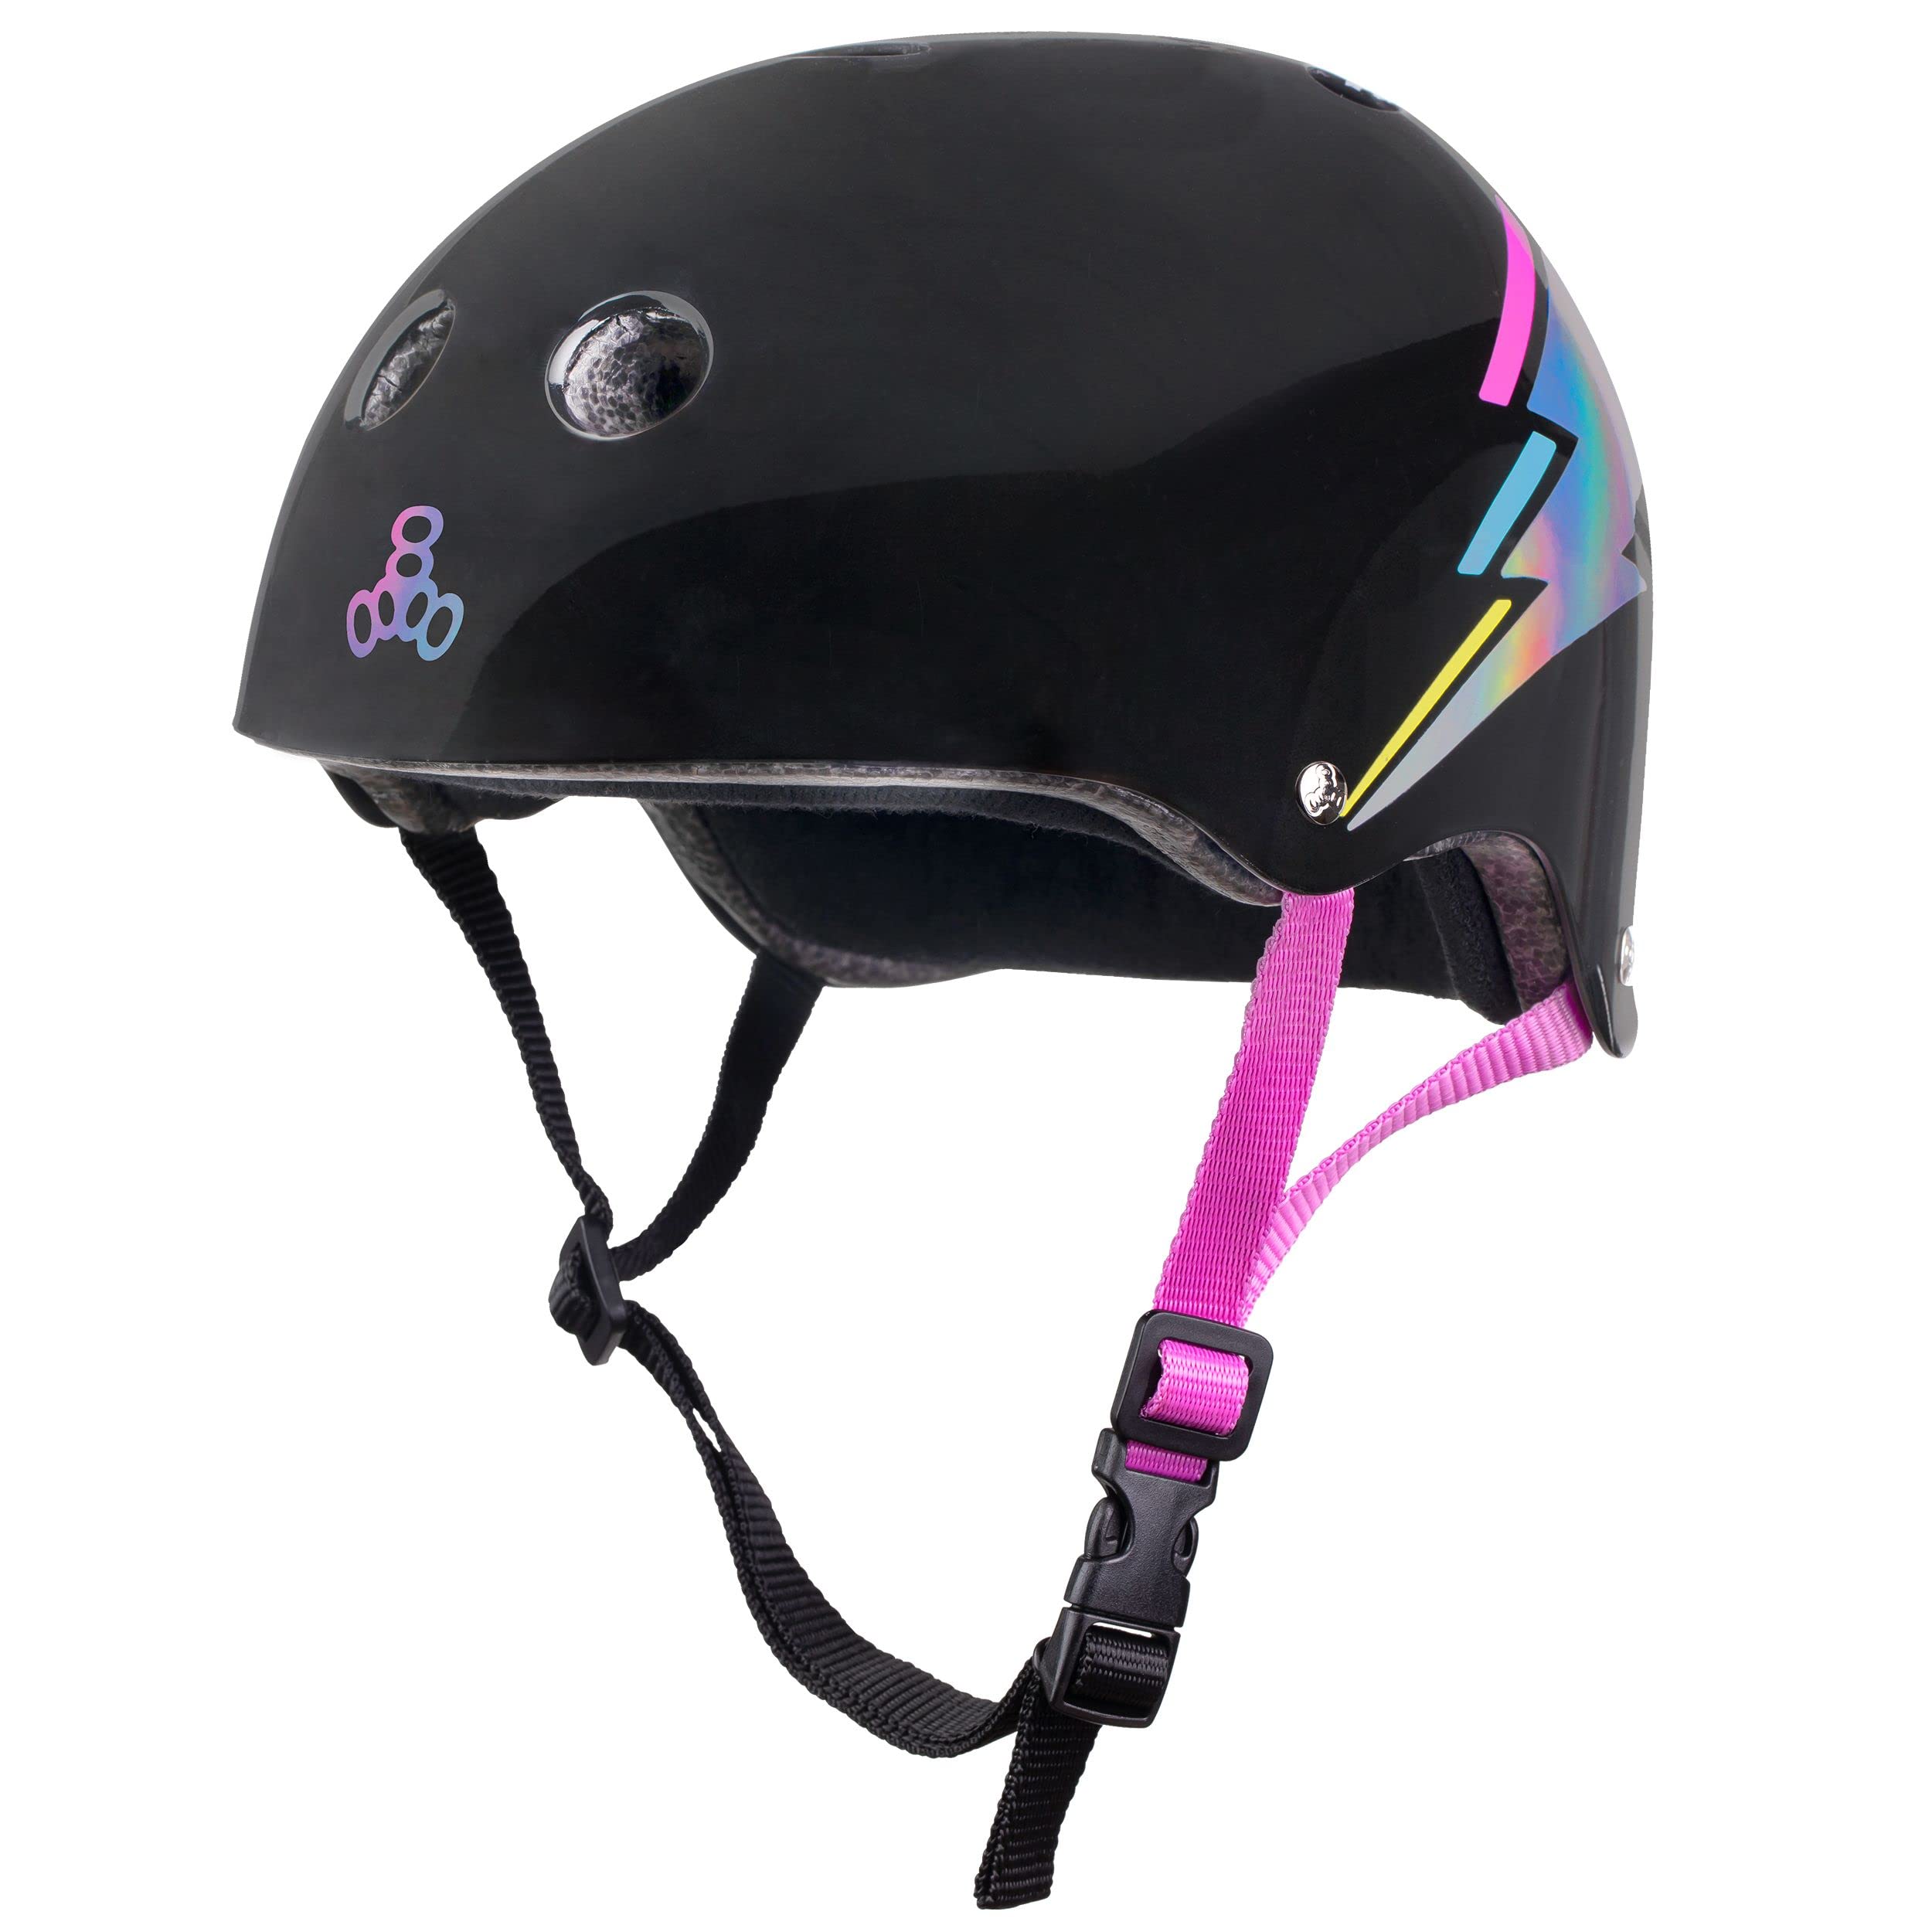 Triple Eight 适用于滑板、BMX 和轮滑运动的经过认证的 Sweatsaver 头盔...